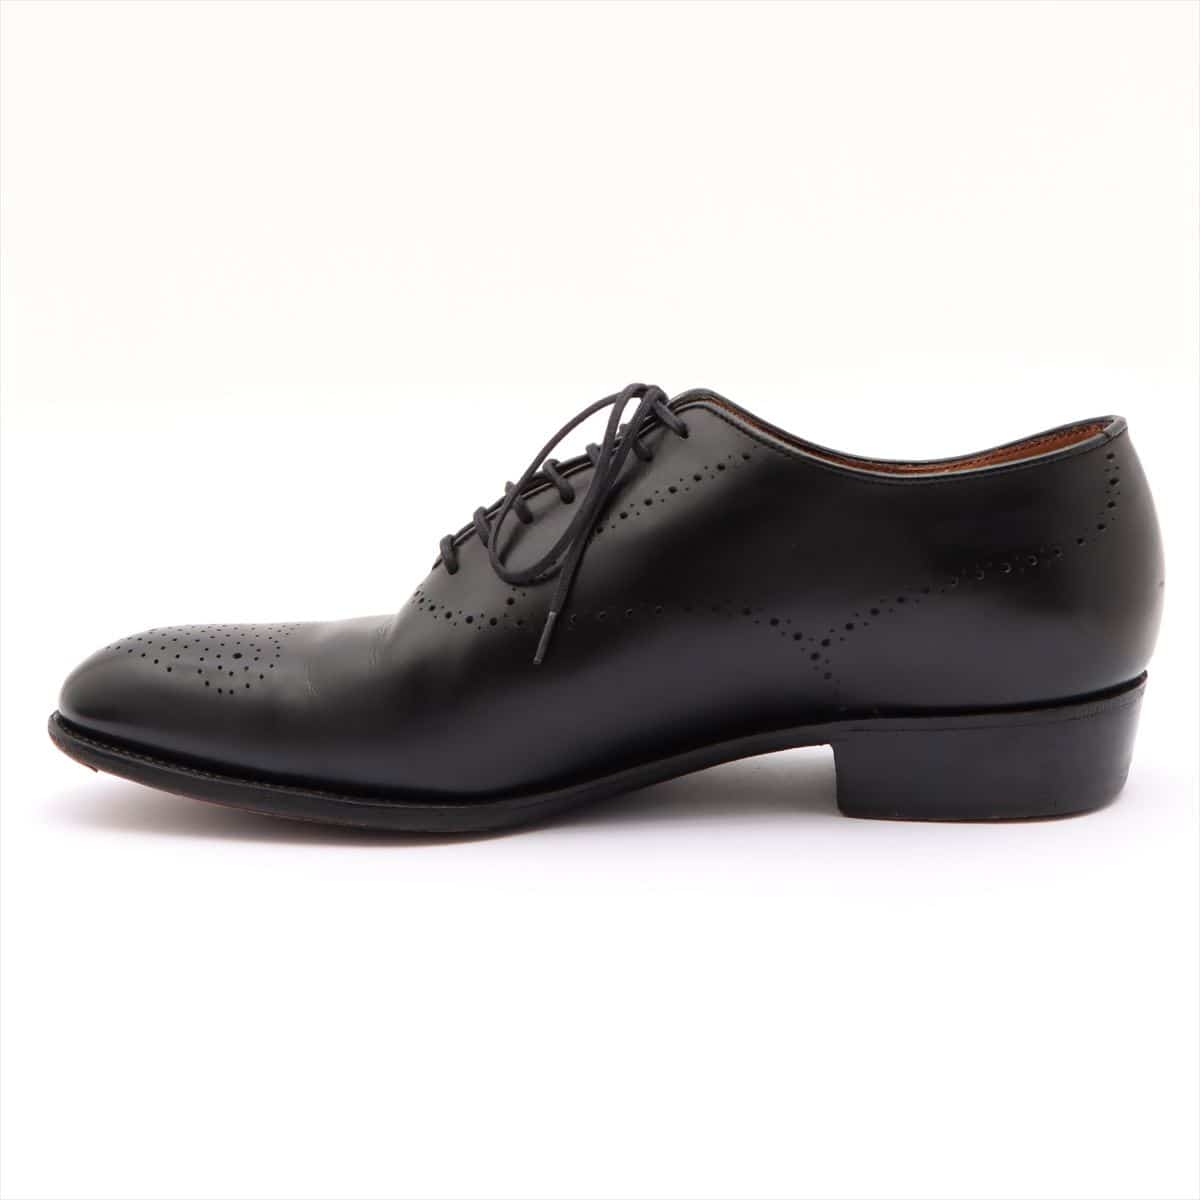 J. M. Weston Leather Leather shoes 5 Men's Black